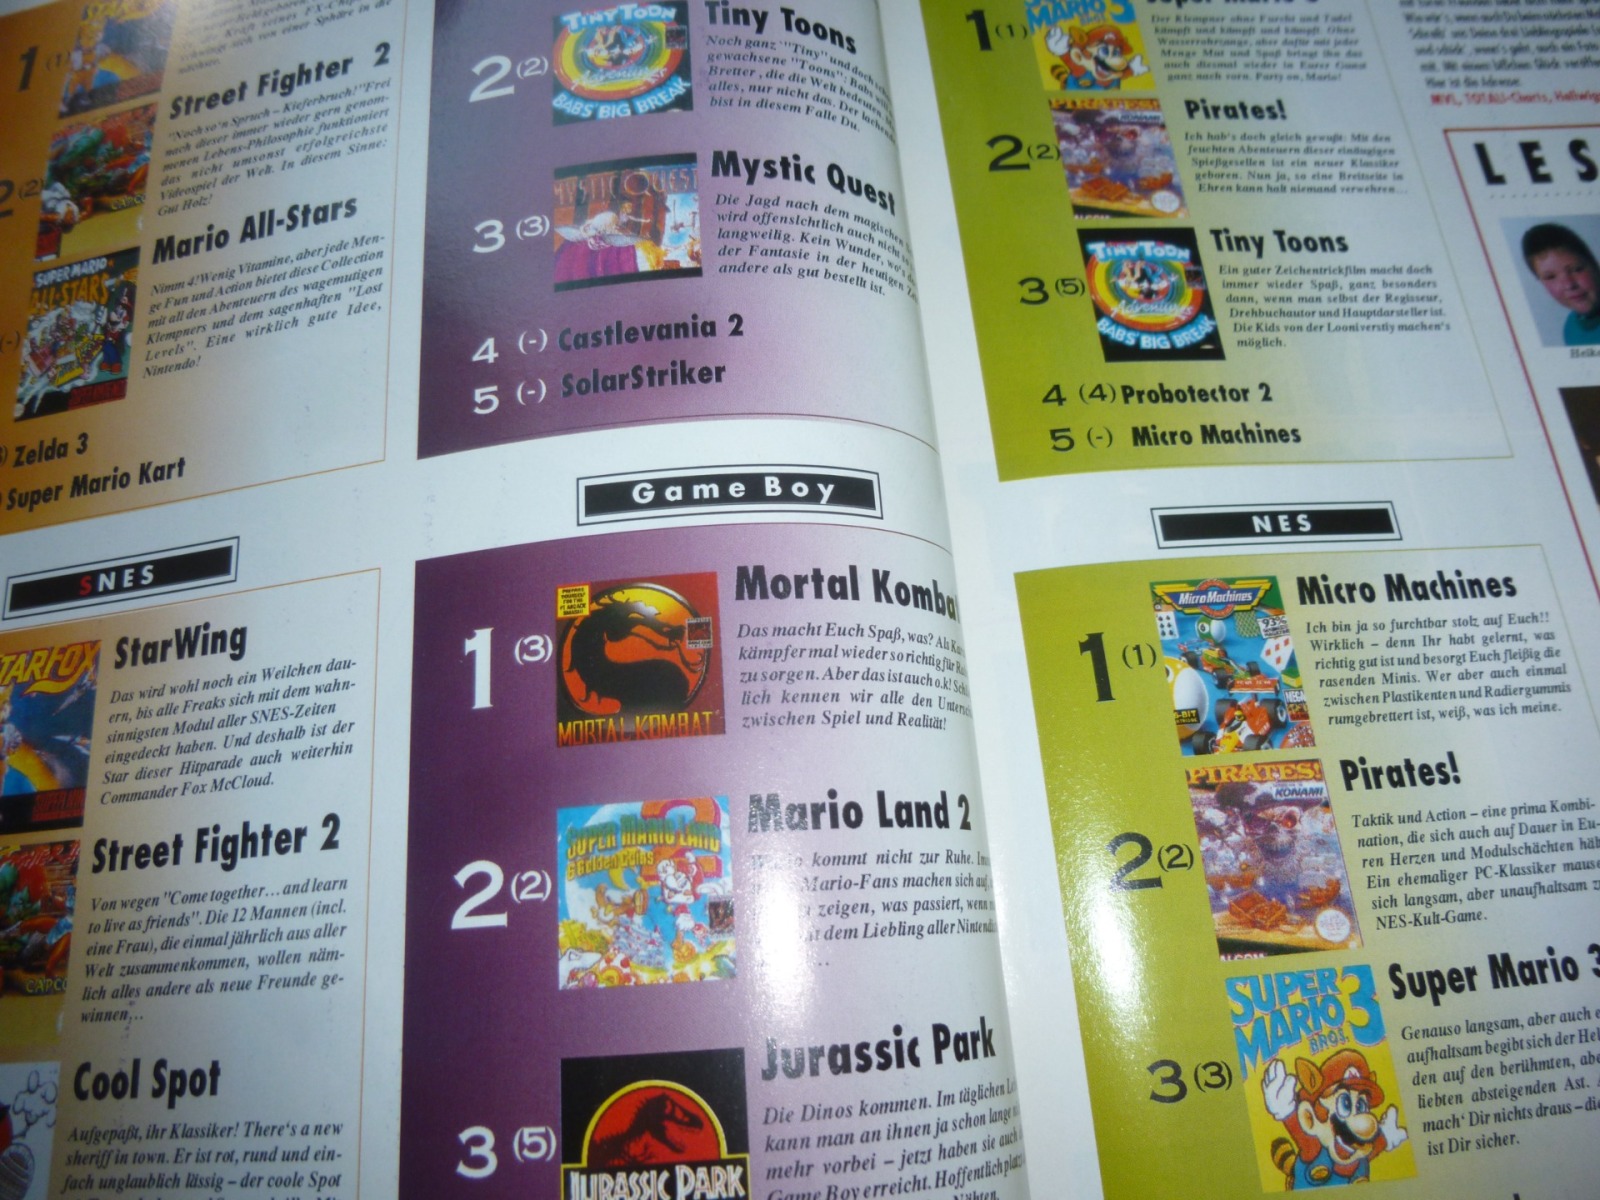 TOTAL Das unabhängige Magazin - 100 Nintendo - Ausgabe 12/93 1993 18